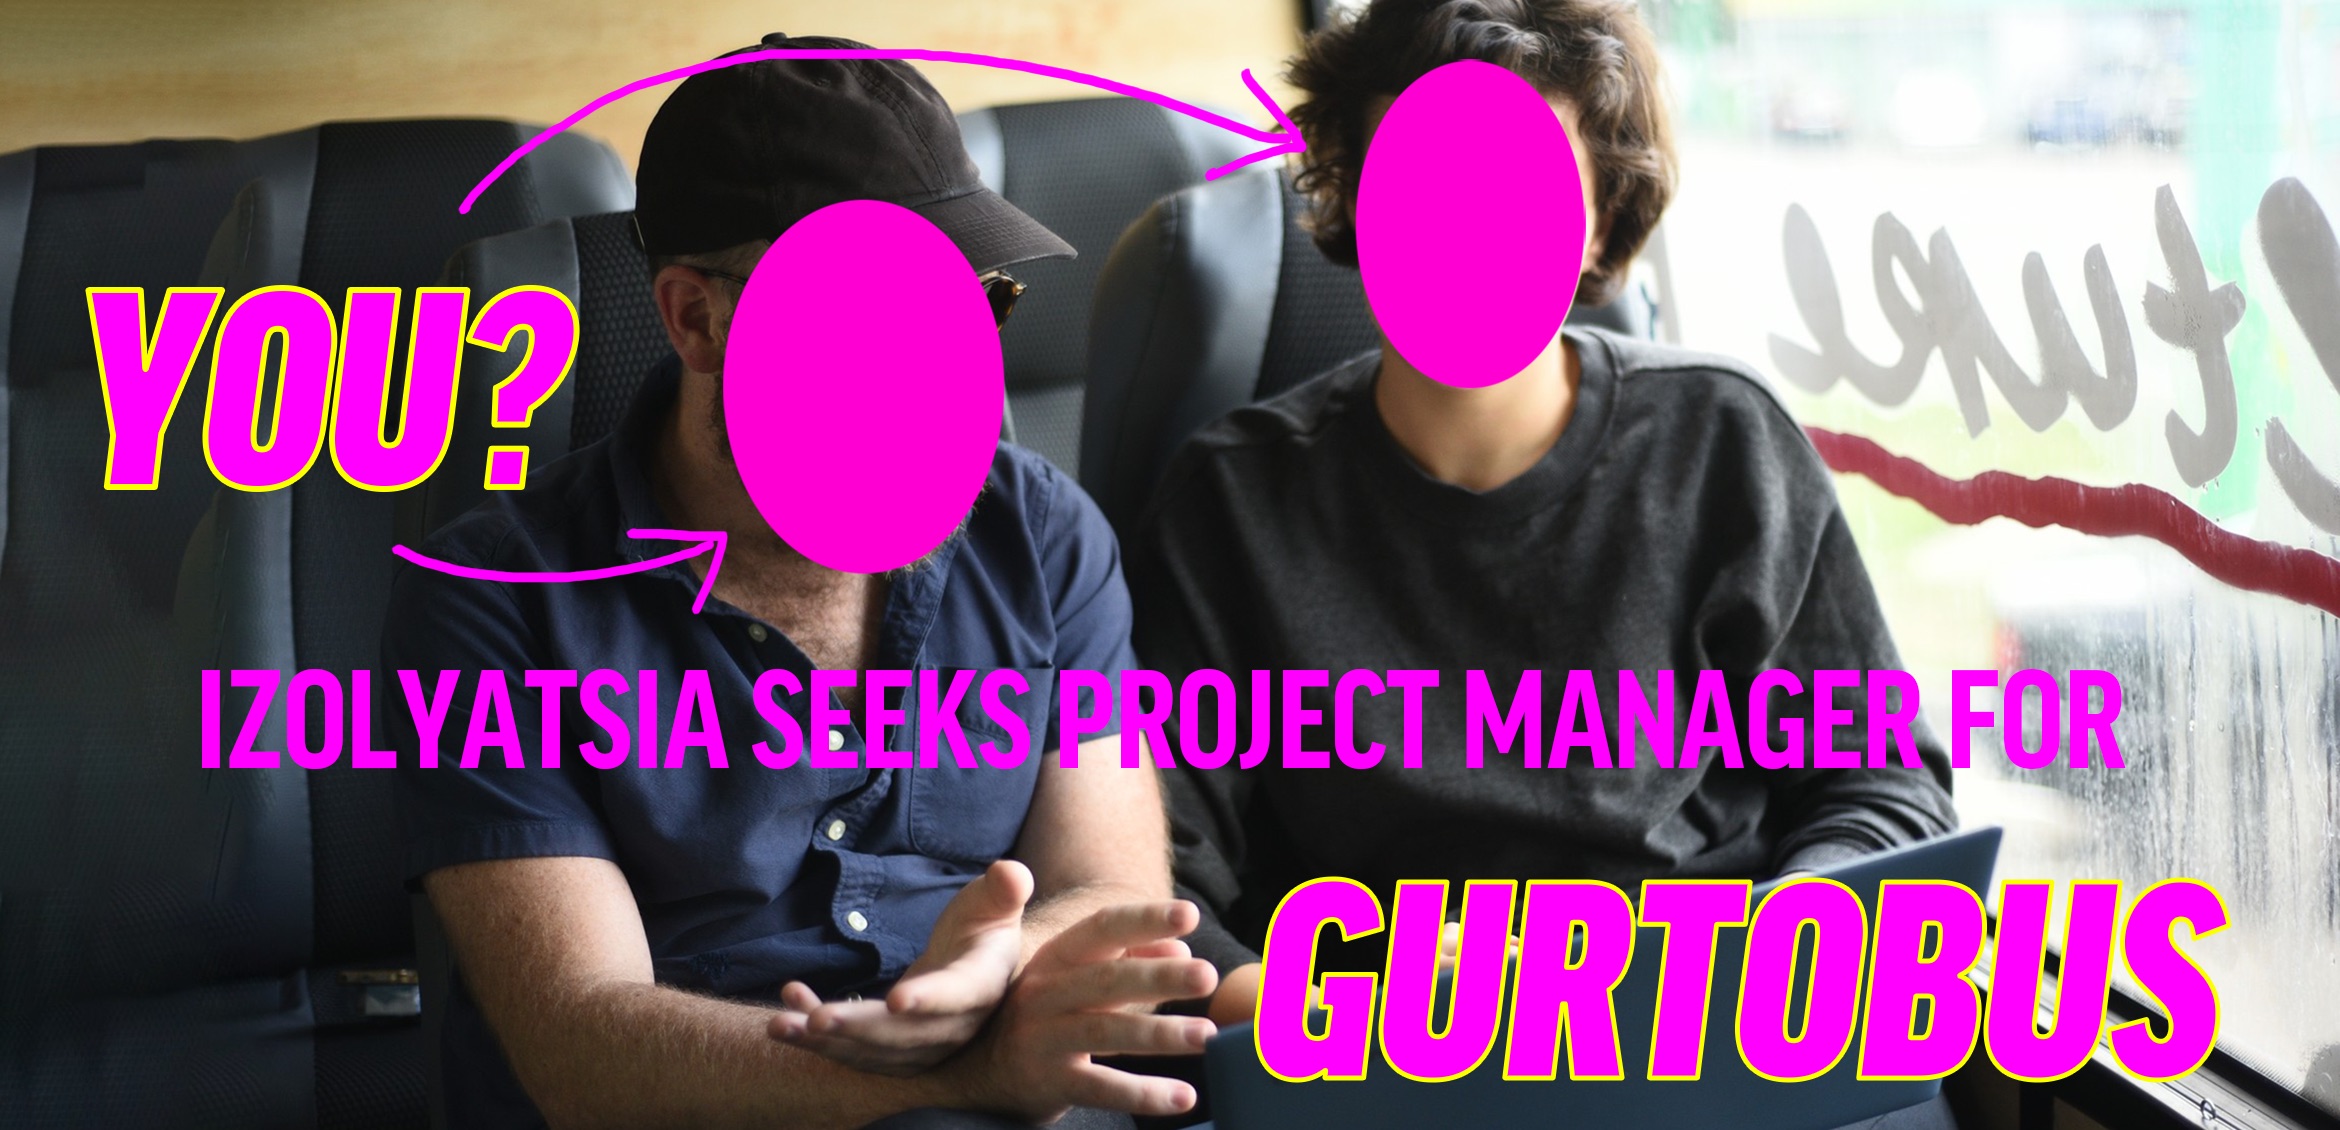 IZOLYATSIA is seeking a Project Manager of the Gurtobus!